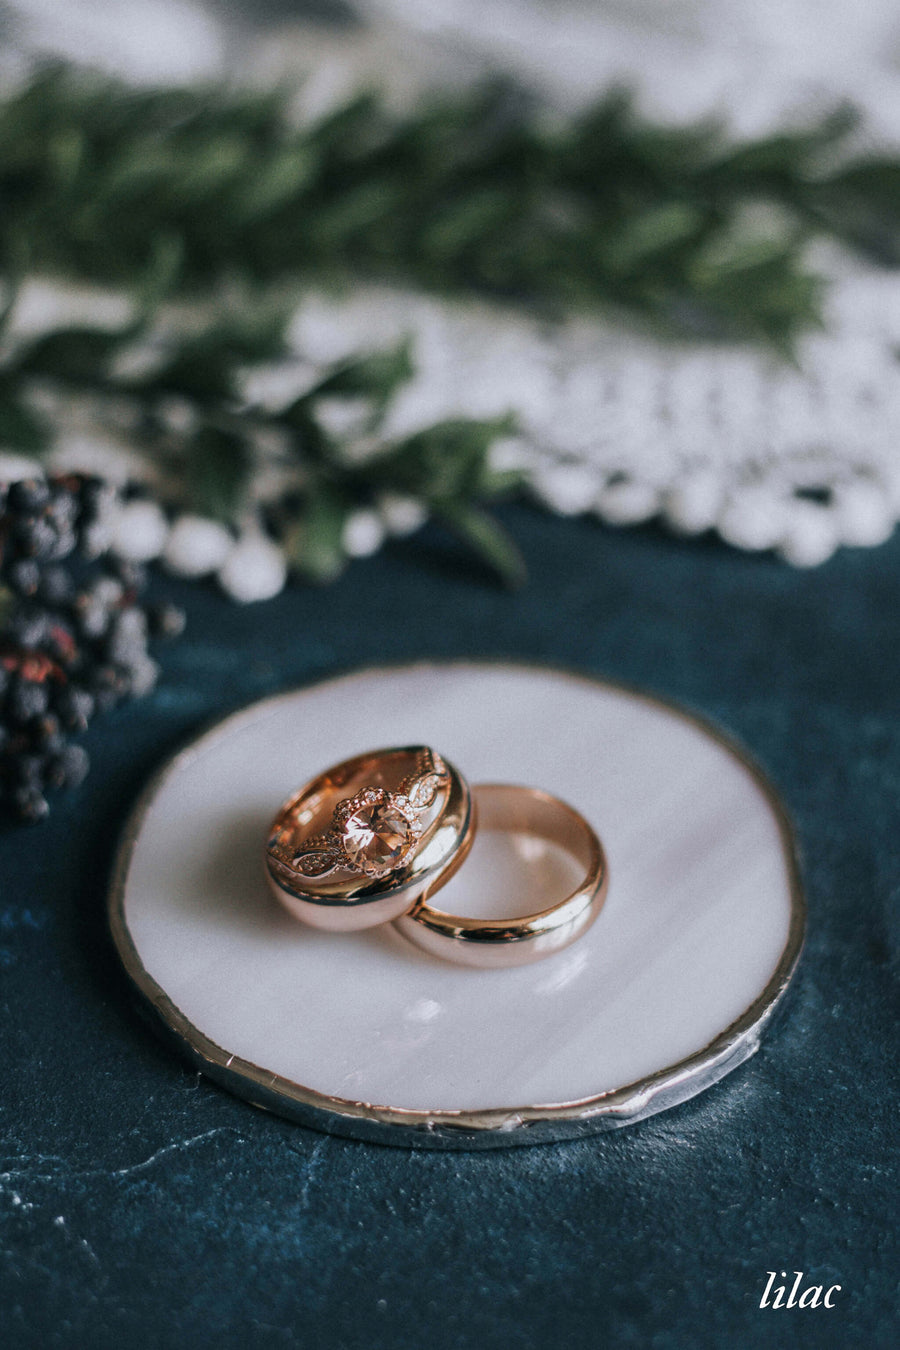 lilac wedding ring dish